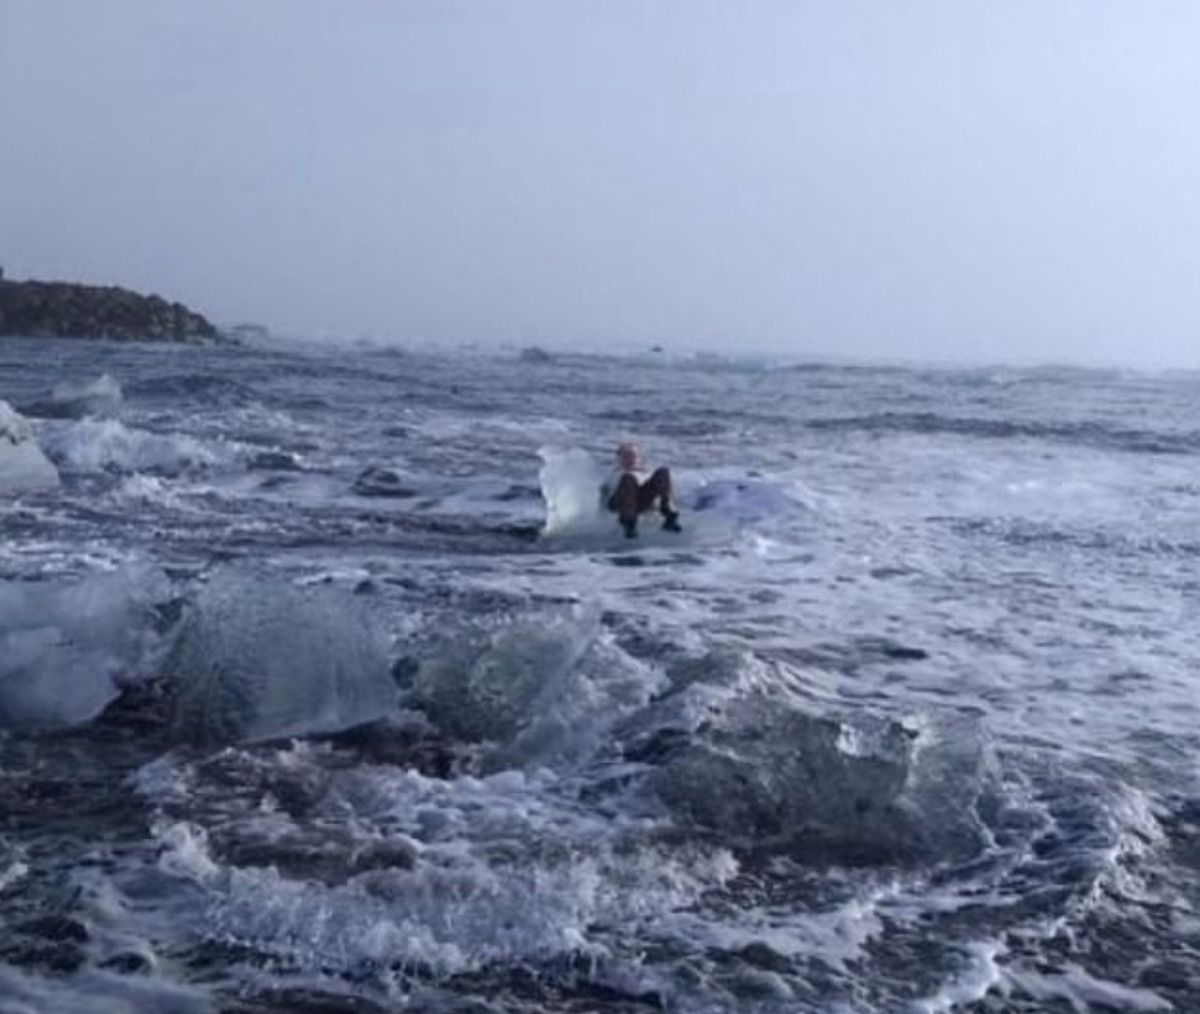 Бабусю, яка позувала на айсбергу, віднесло у відкрите море. Хвиля що набігла в цей час понесла крижину разом з жінкою в море.